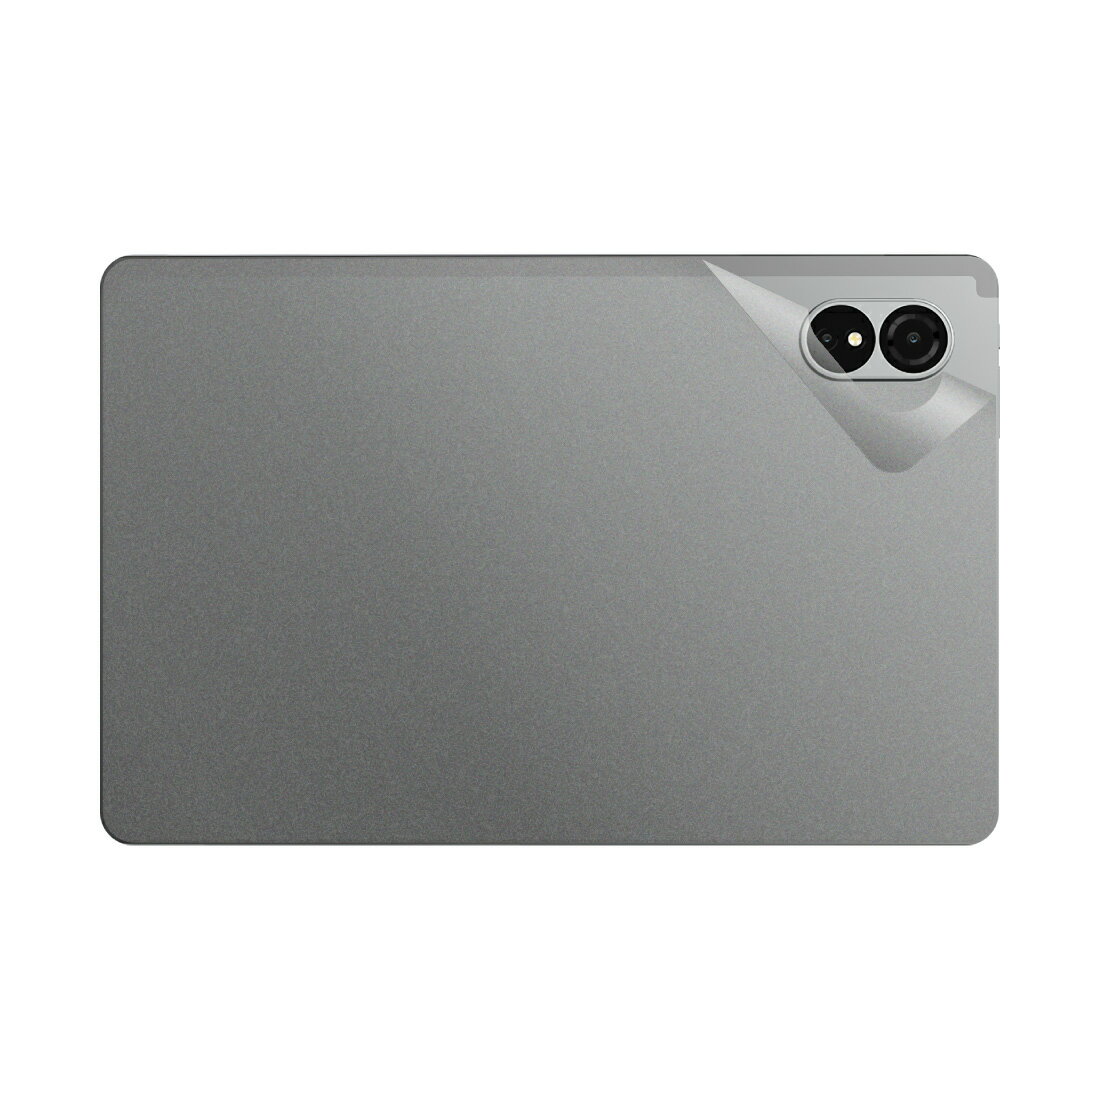 スキンシール ALLDOCUBE iPlay 60 Lite 【透明・すりガラス調】 日本製 自社製造直販